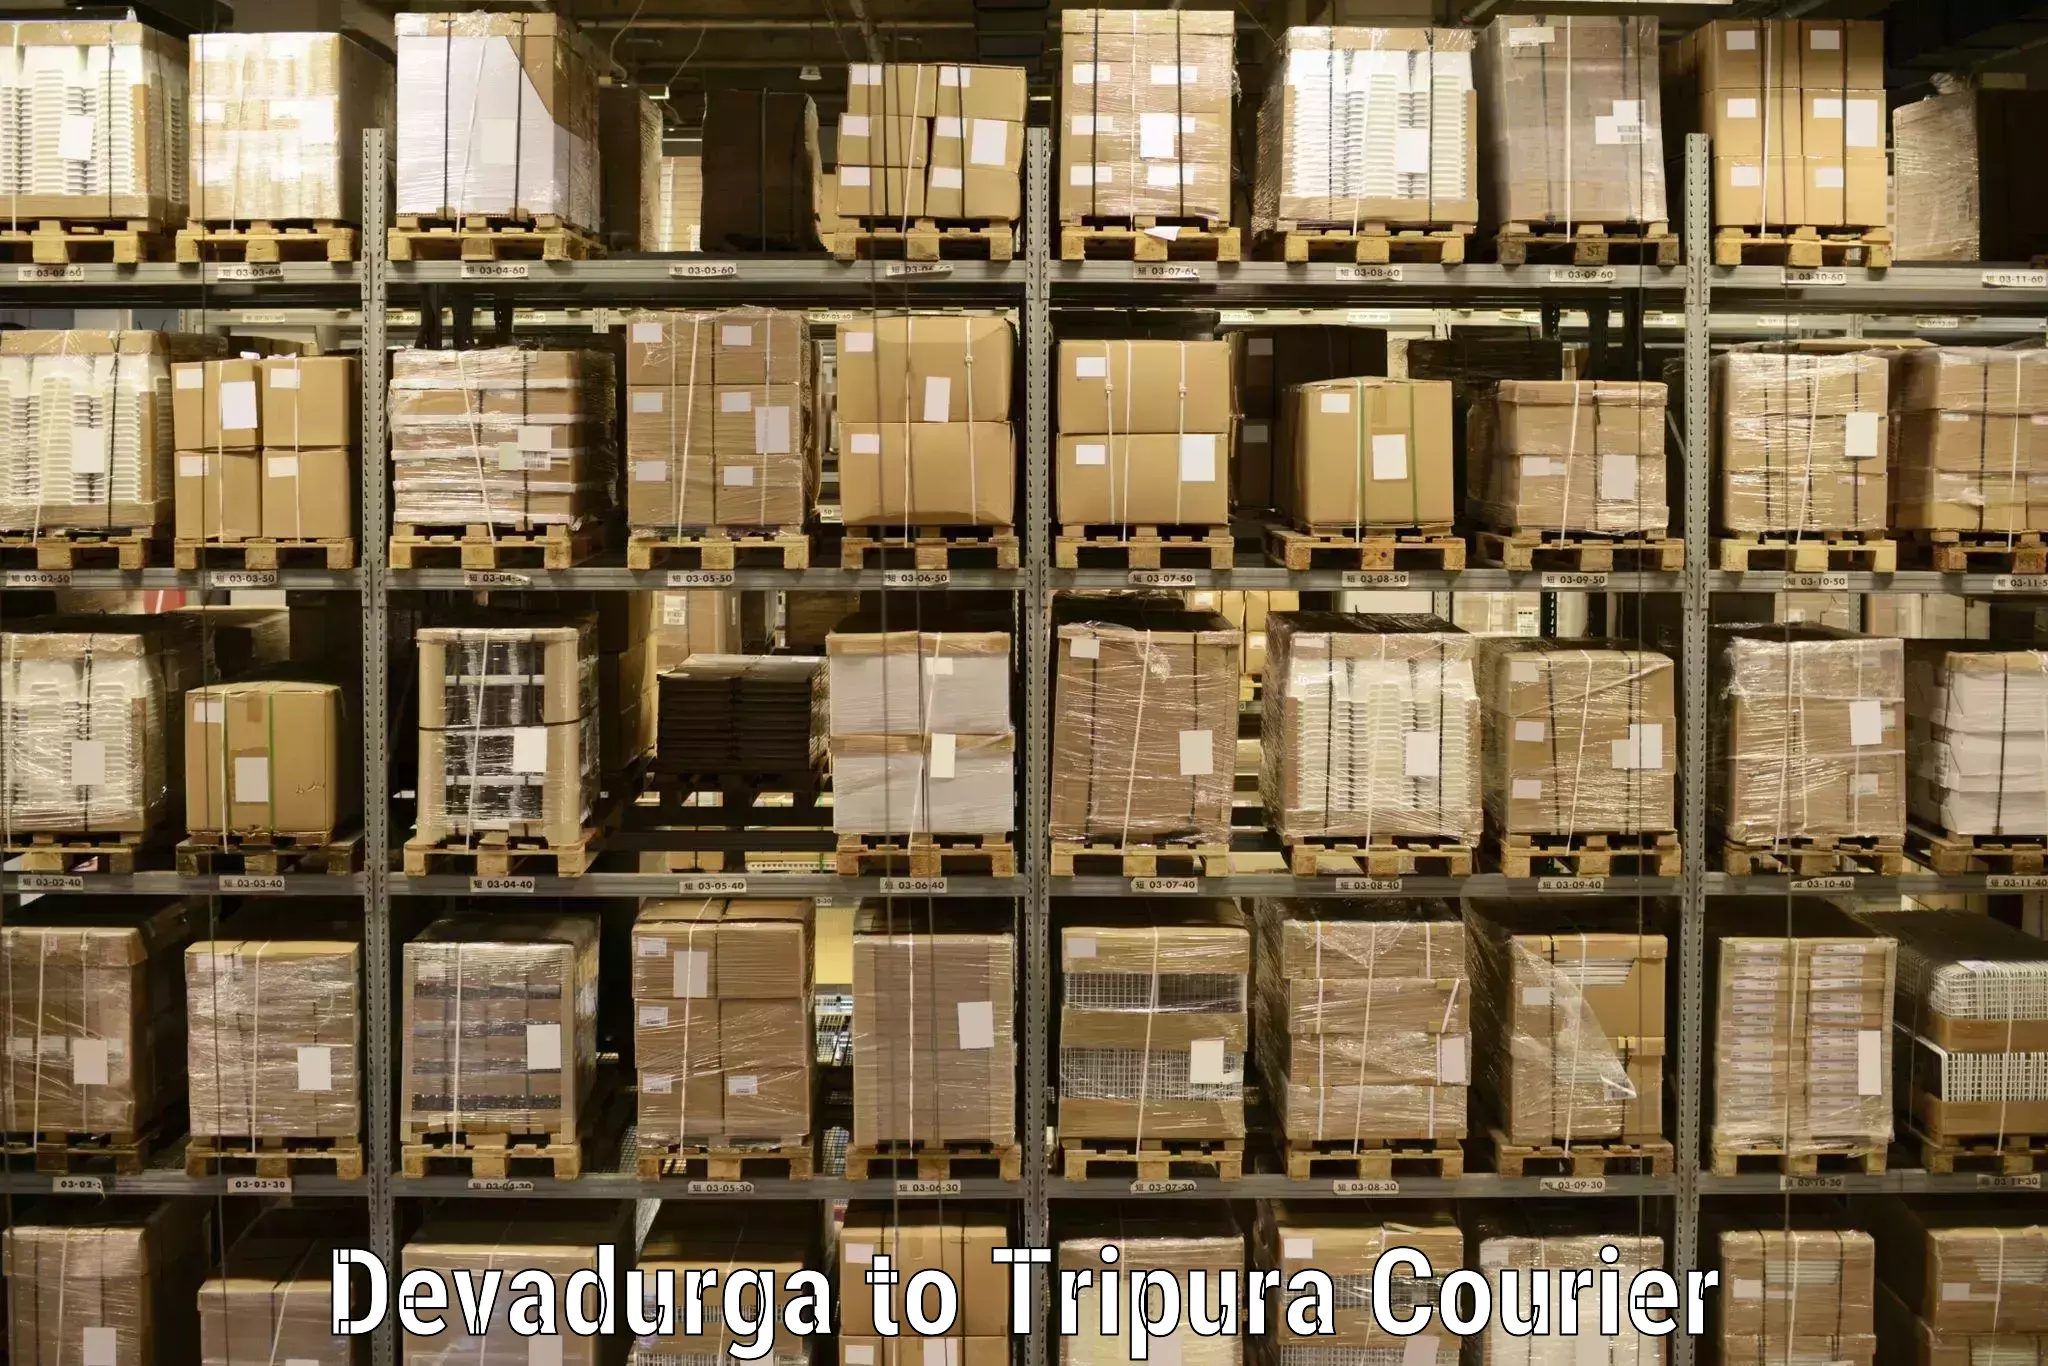 User-friendly delivery service Devadurga to Dharmanagar